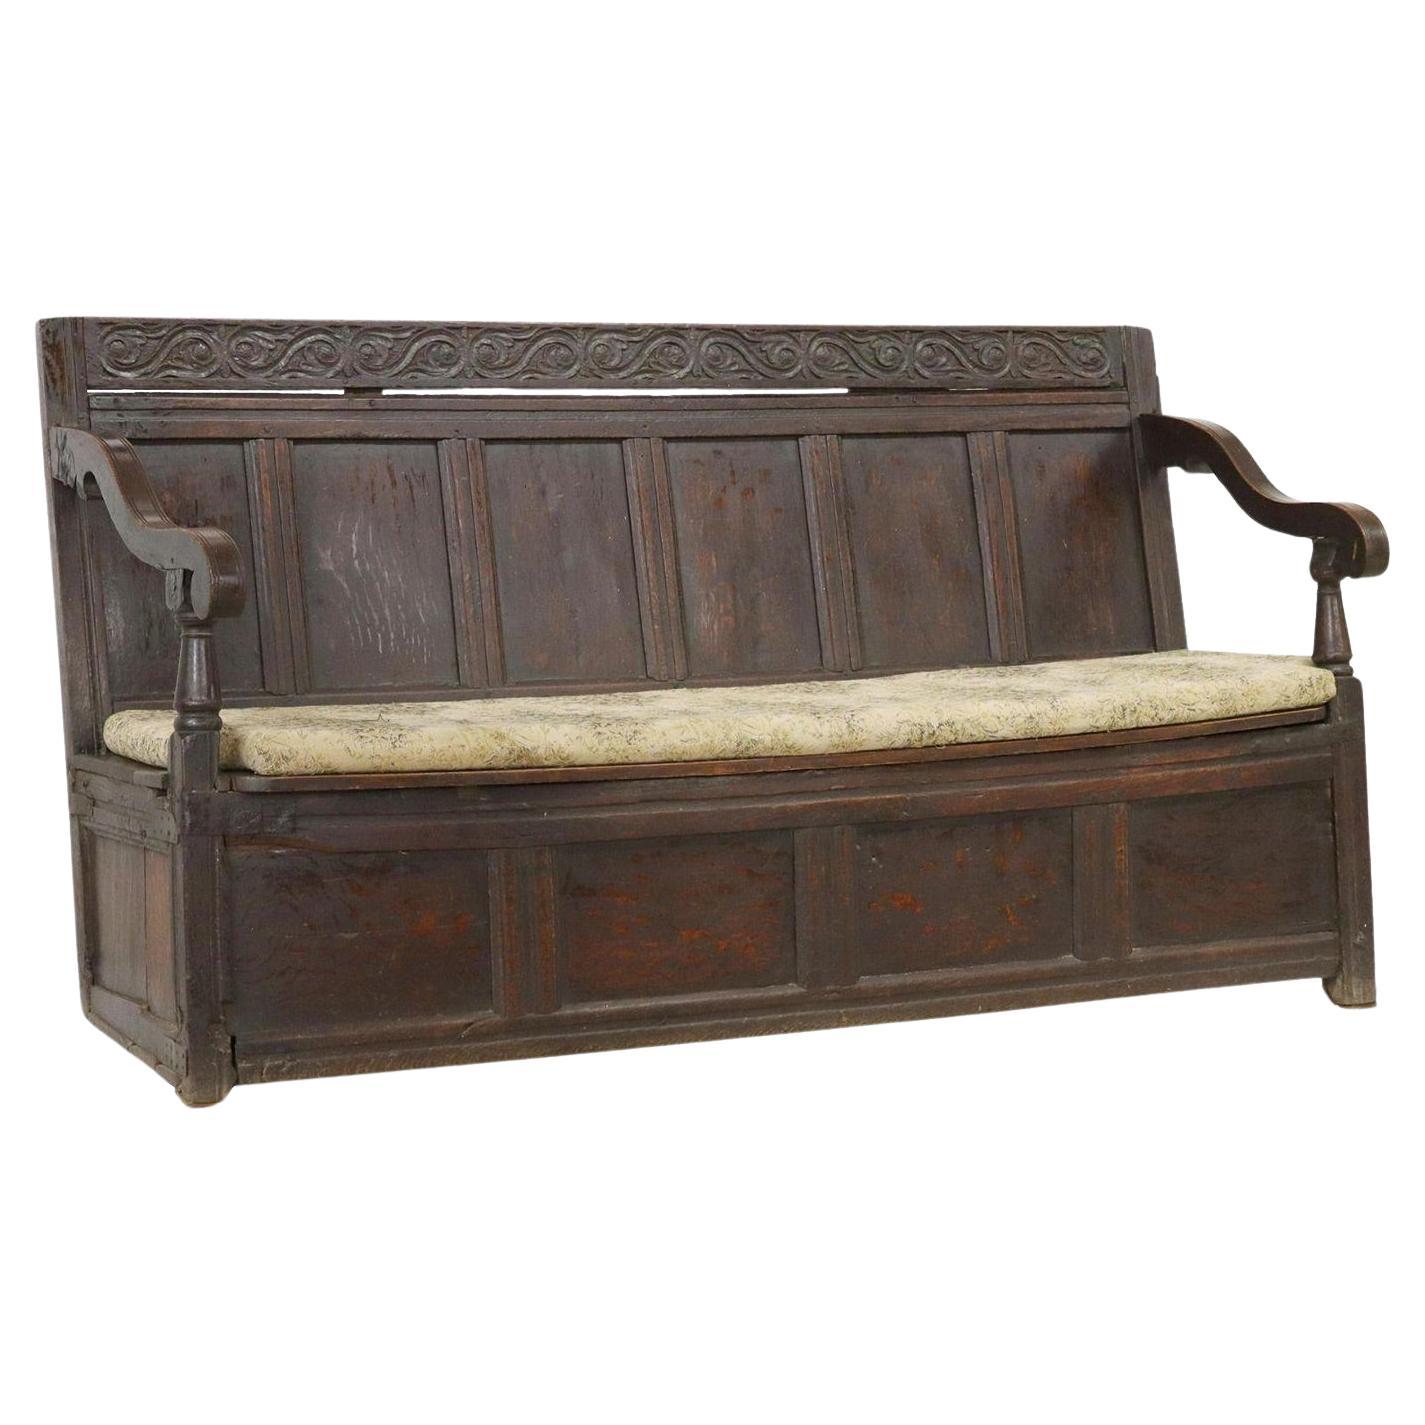 Englische Hall Storage Settle Bench aus Eiche, 18. Jahrhundert.